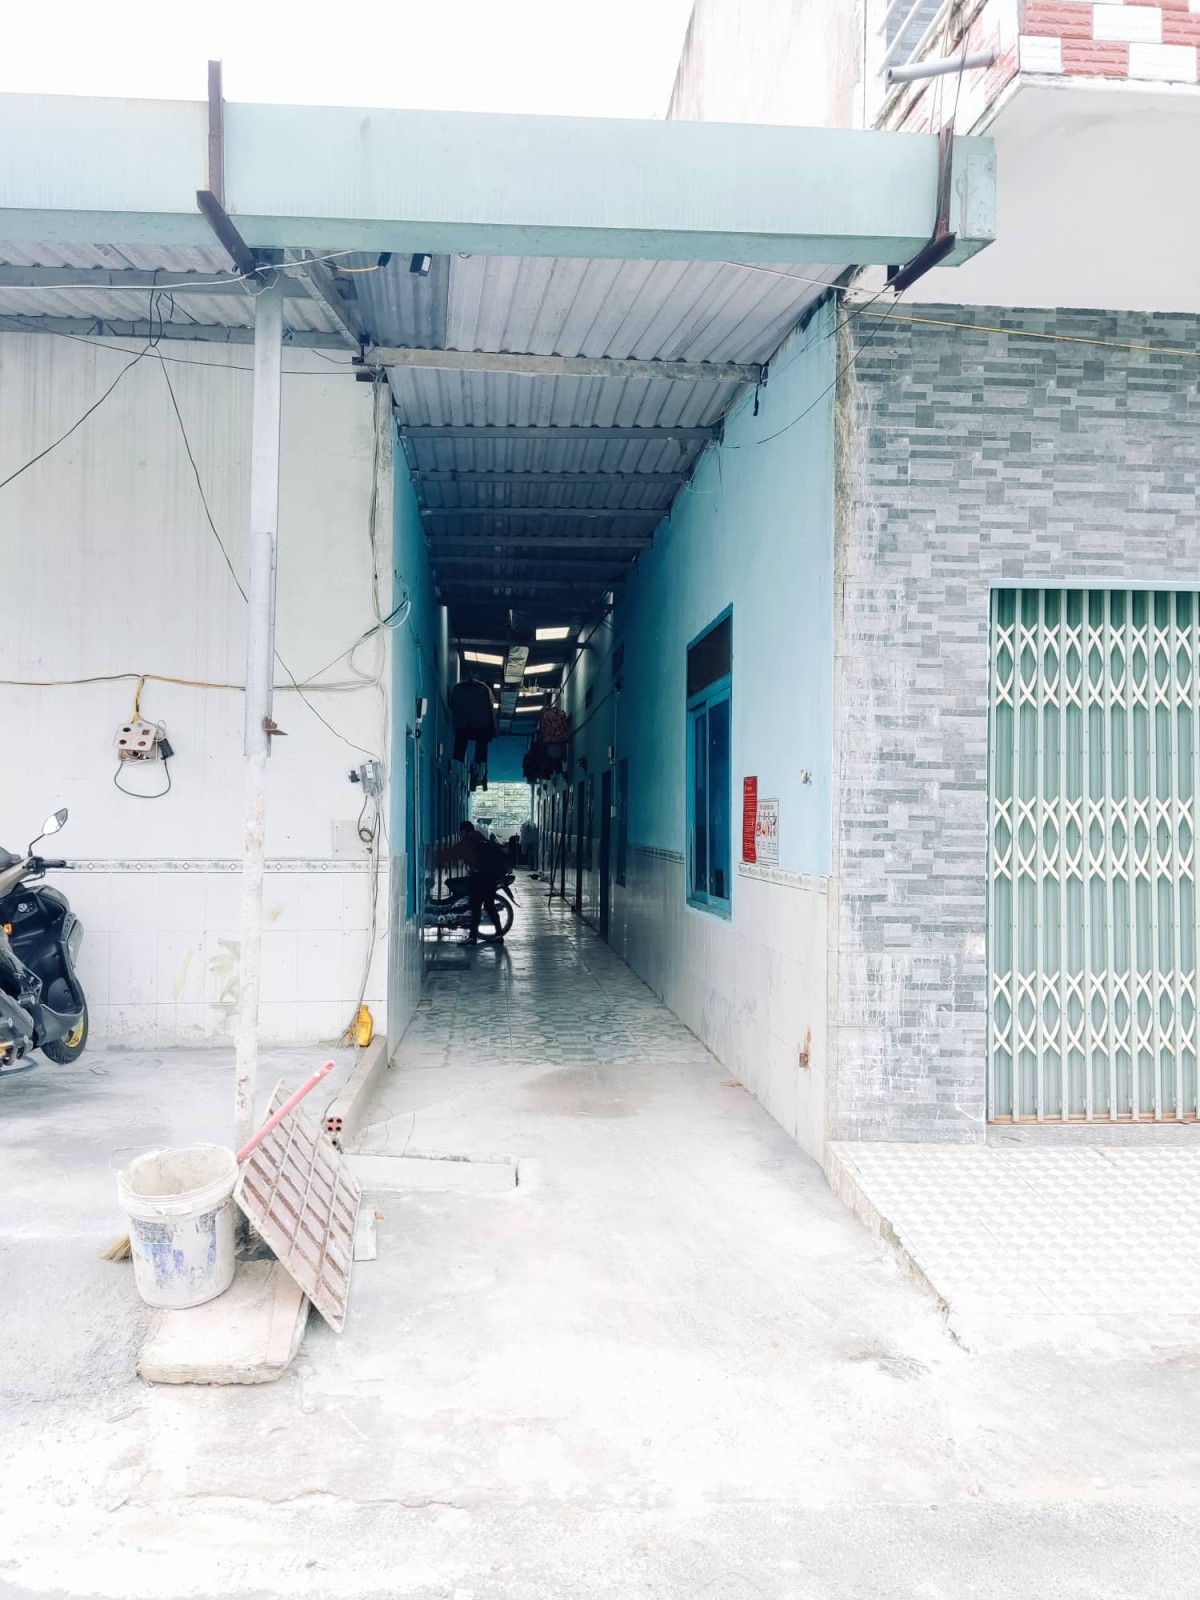 (Còn Phòng) Nhà trọ tại Tam An khu công nghiệp Long Thành Đồng Nai